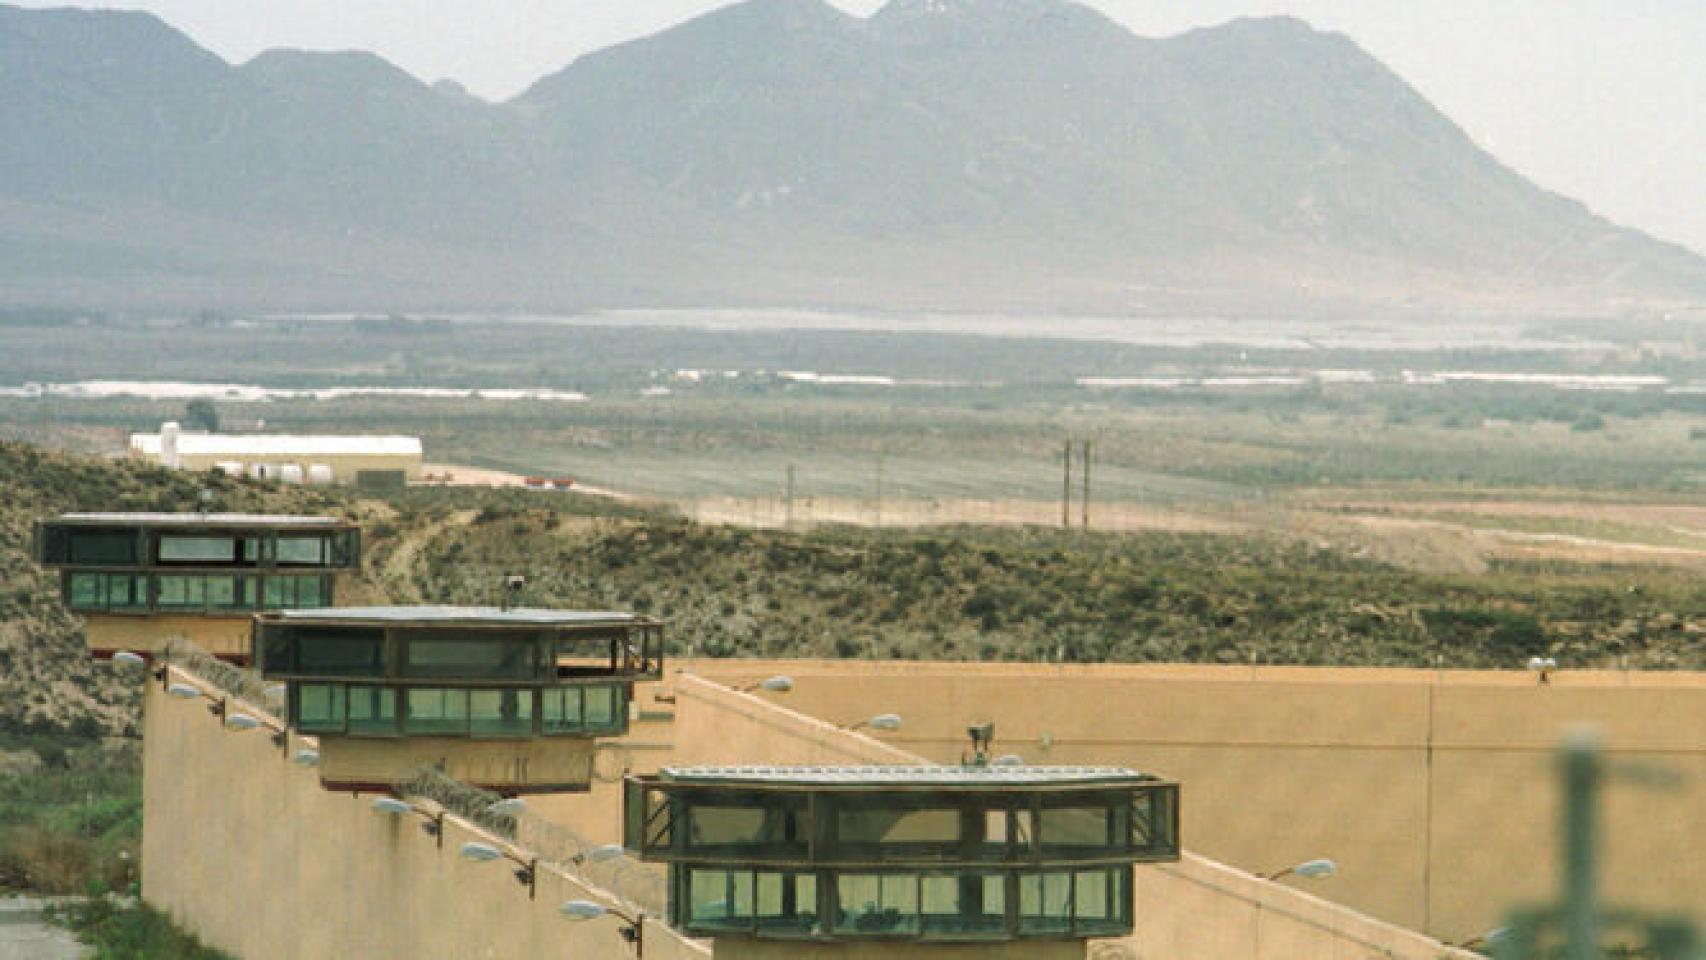 Perímetro exterior de la prisión El Acebuche de Almería.